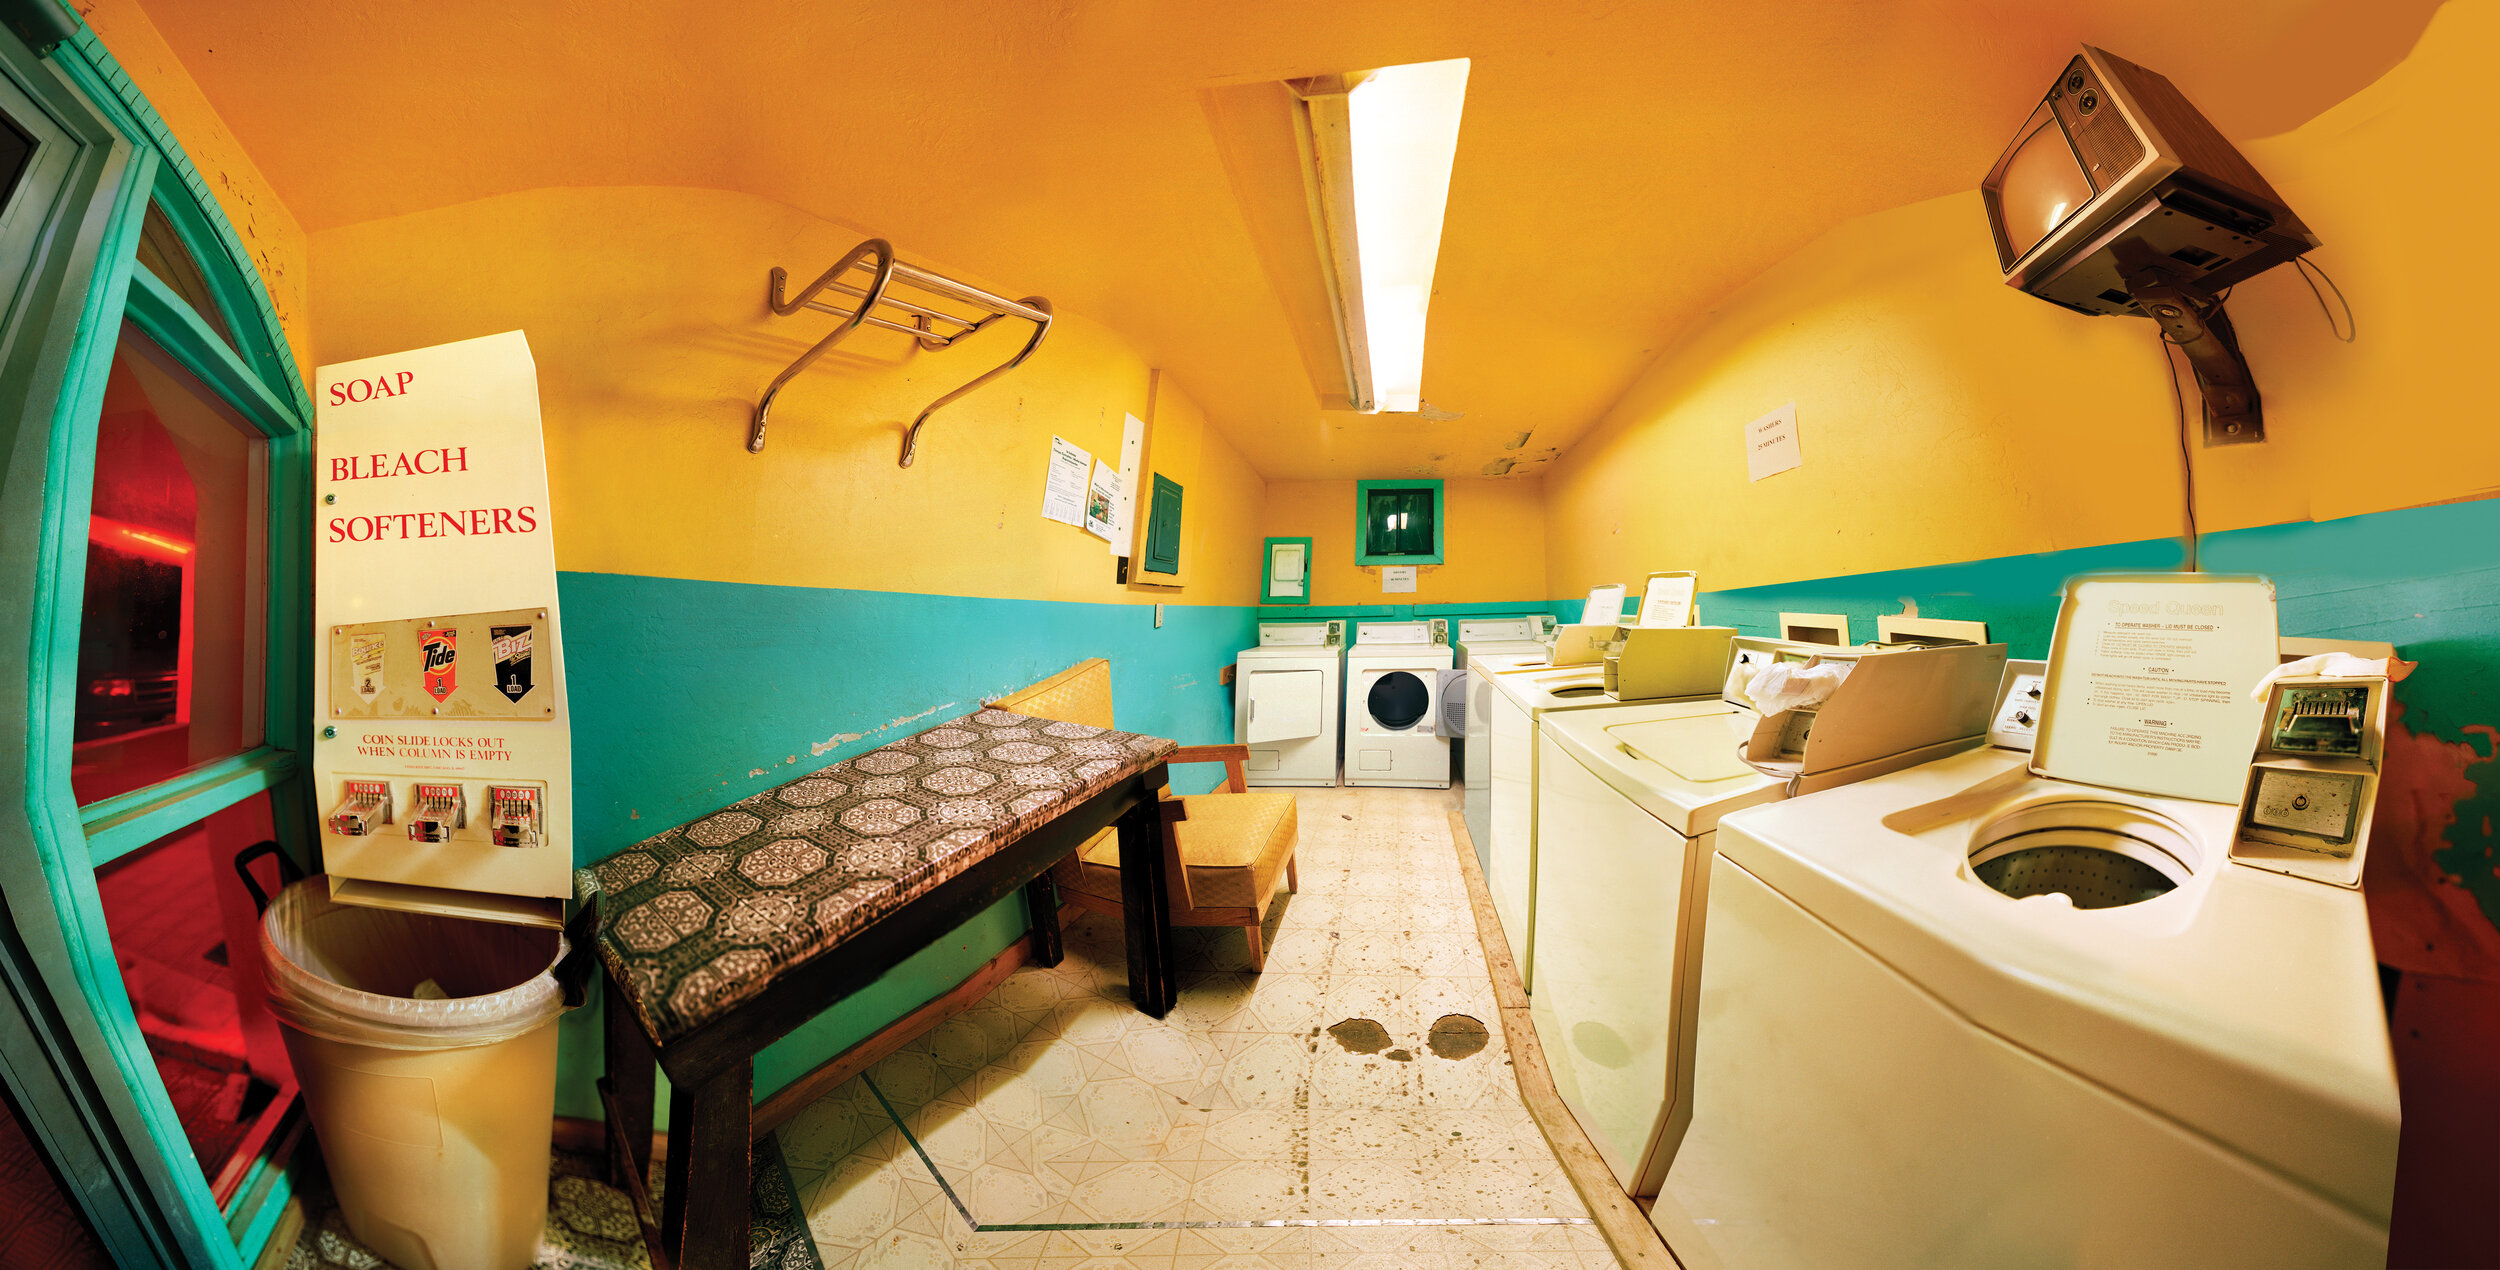 Desert Motel Laundry Room Broc smaller.jpg